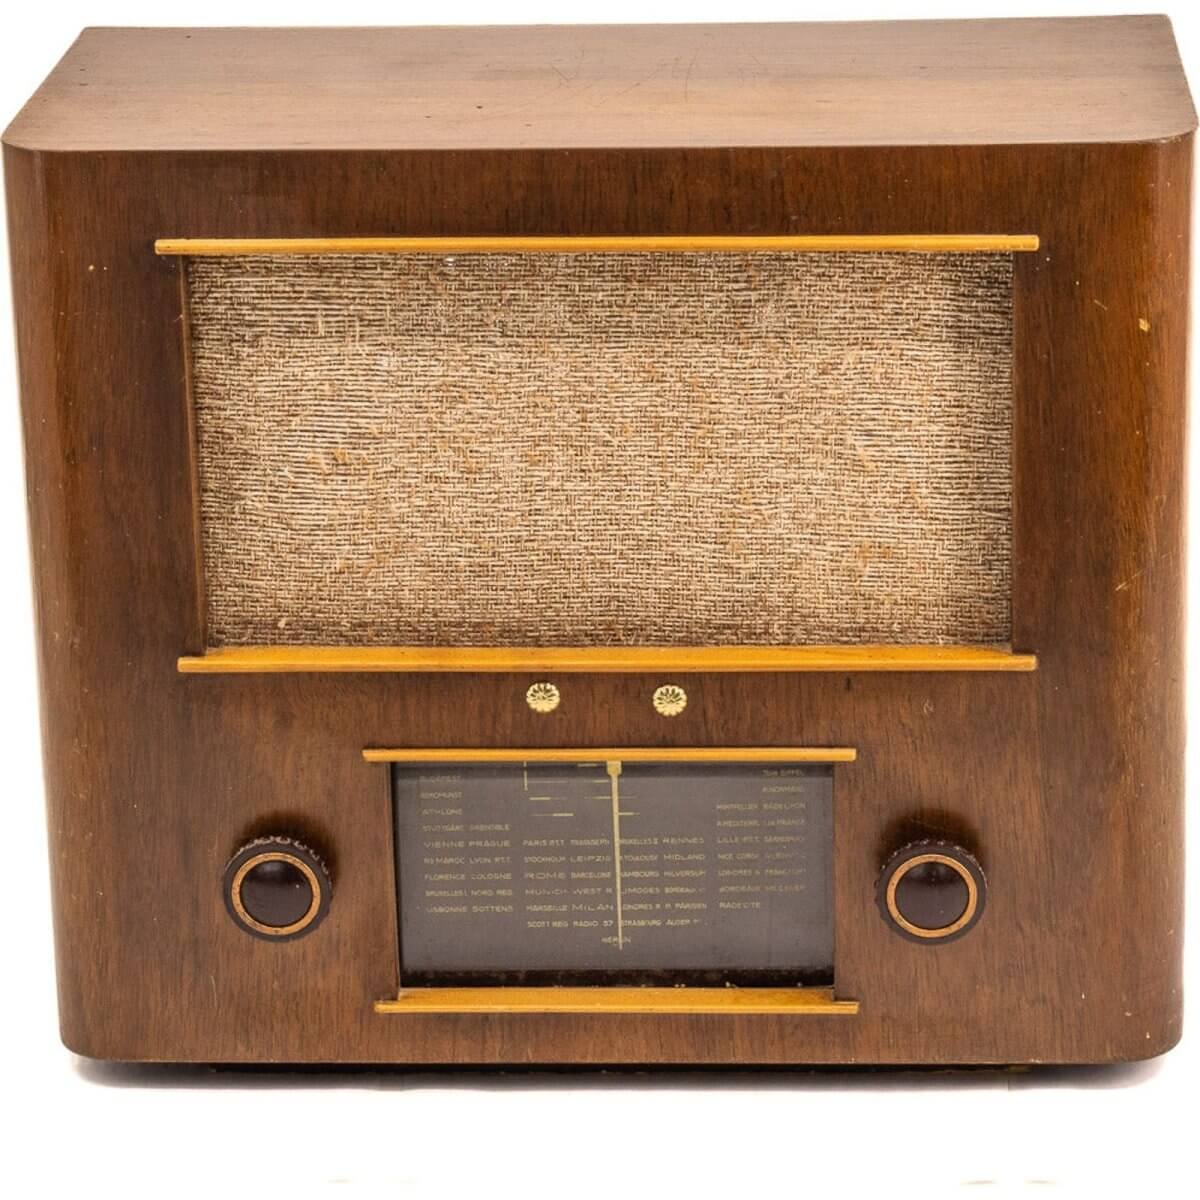 Radio Bluetooth Artisanale Vintage 40’S-A.bsolument-enceintes-et-radios-vintage-bluetooth